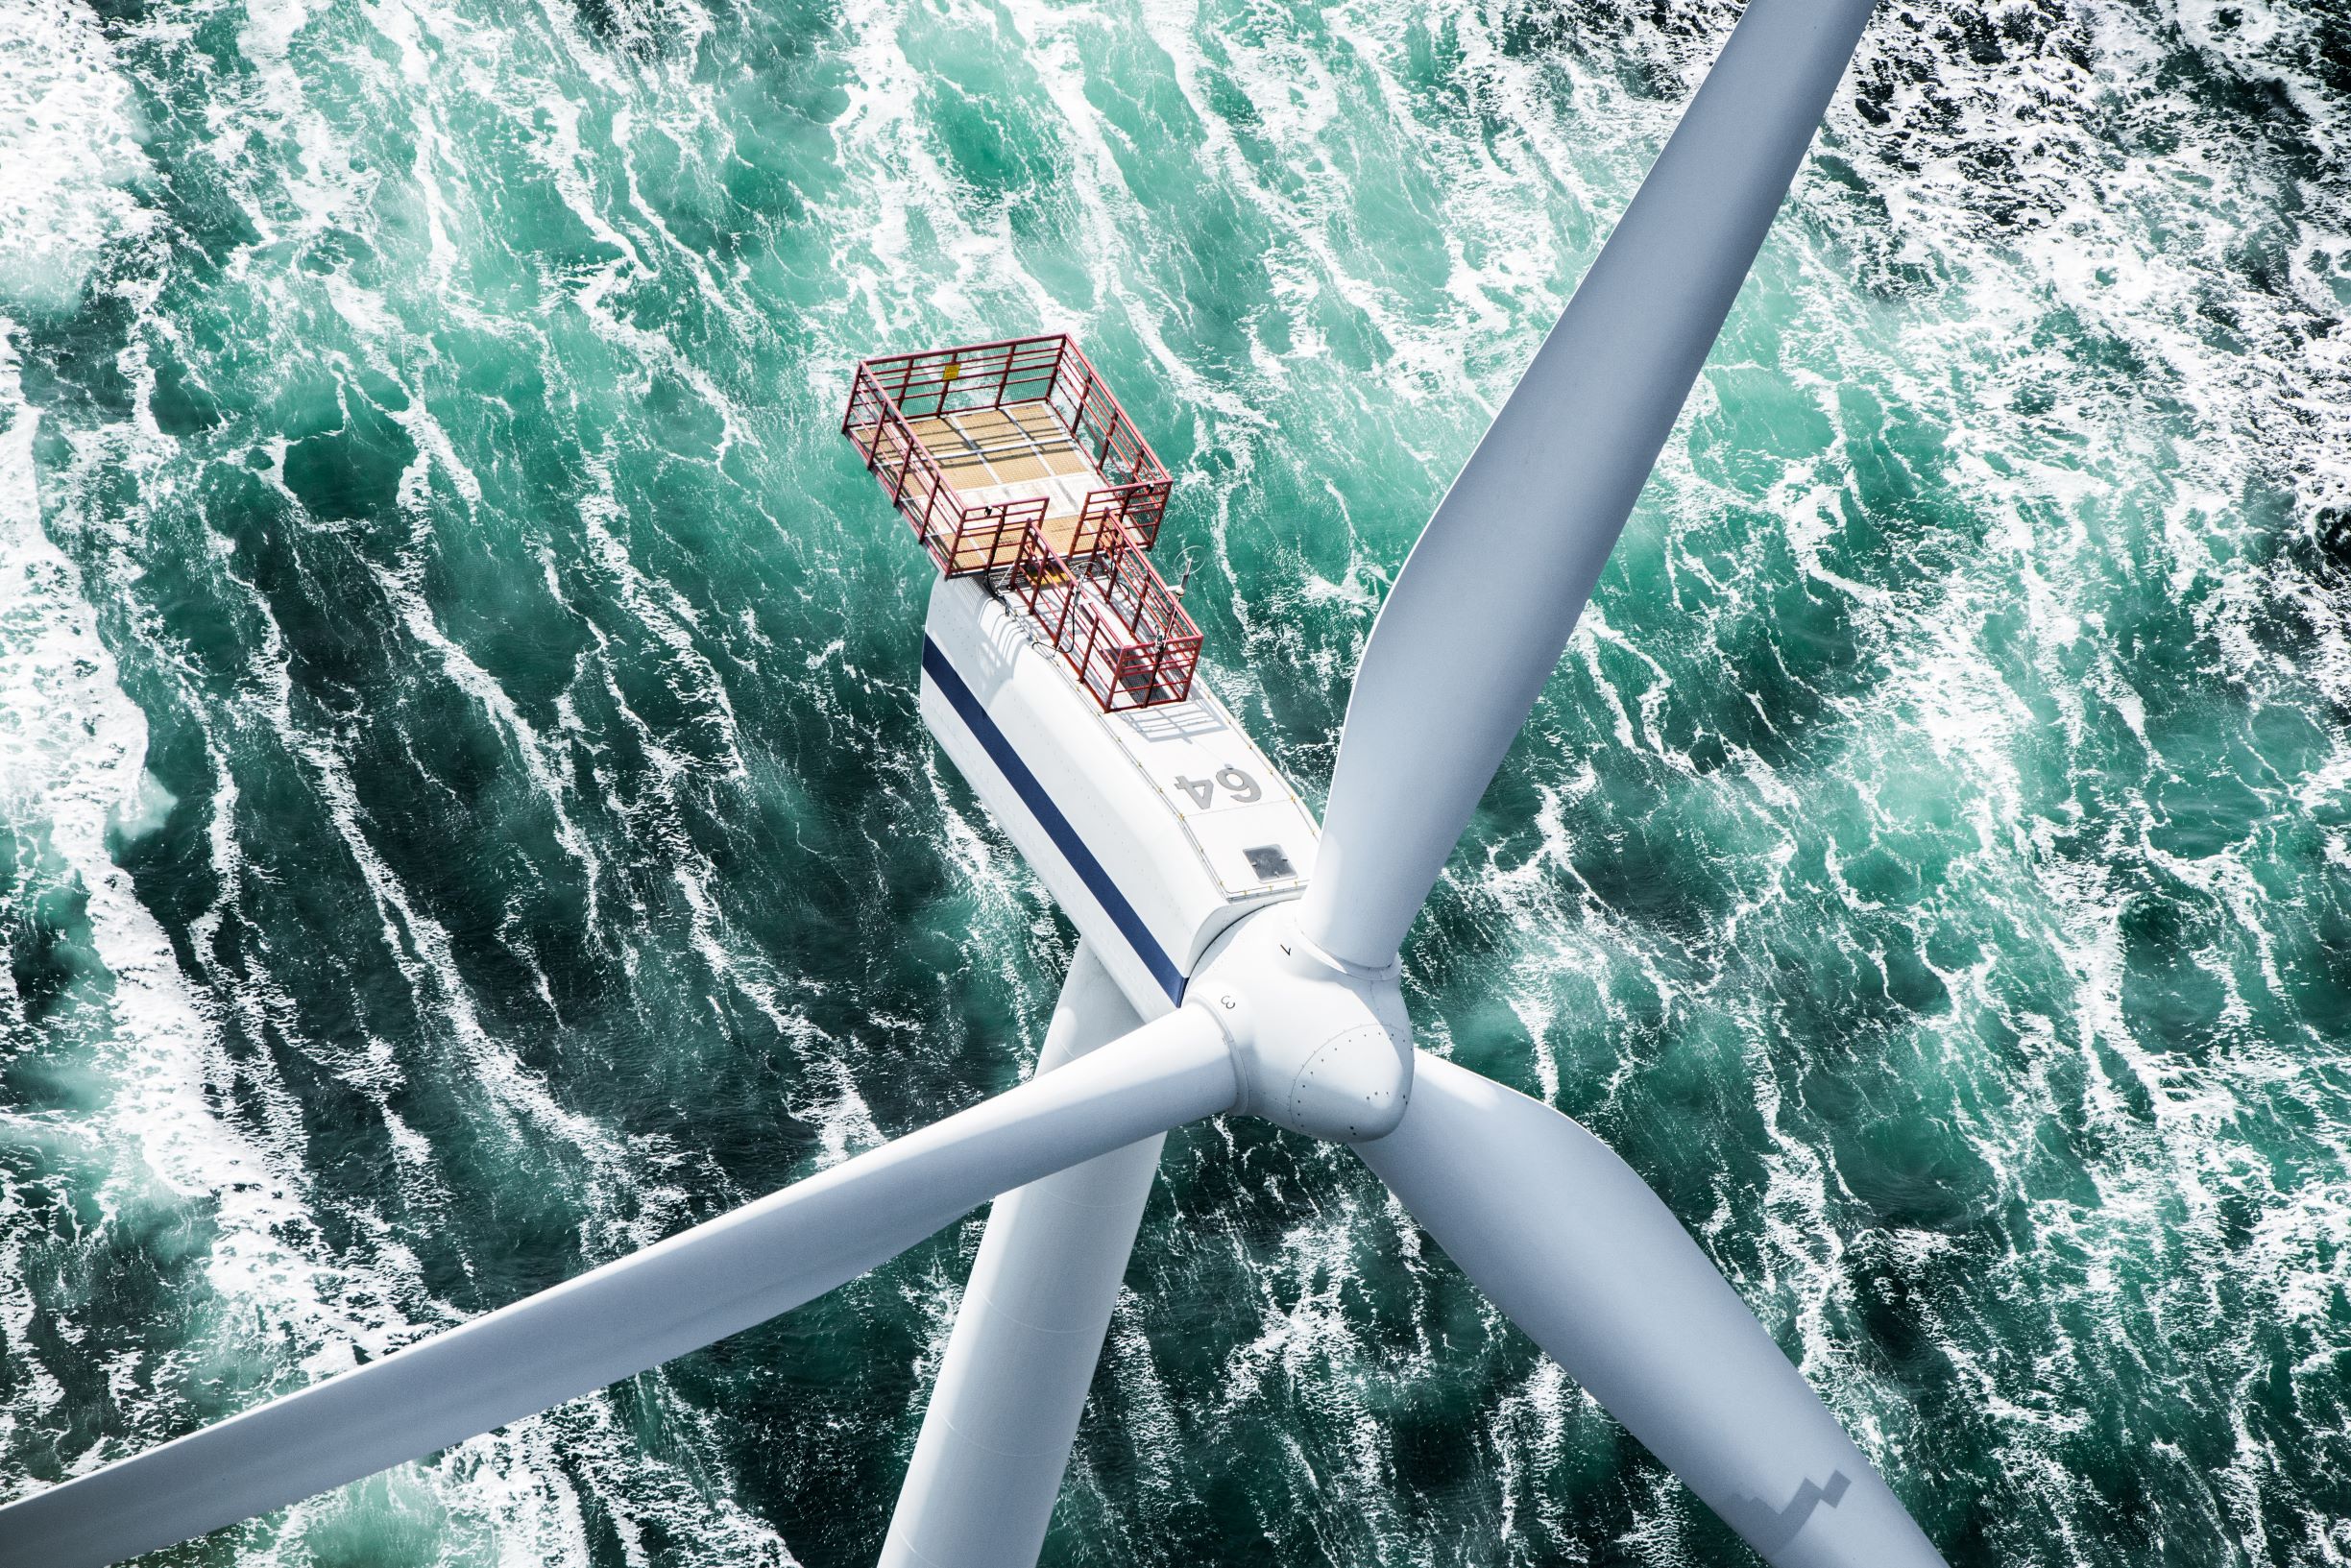 MHI Vestas Aerial Wind Turbine